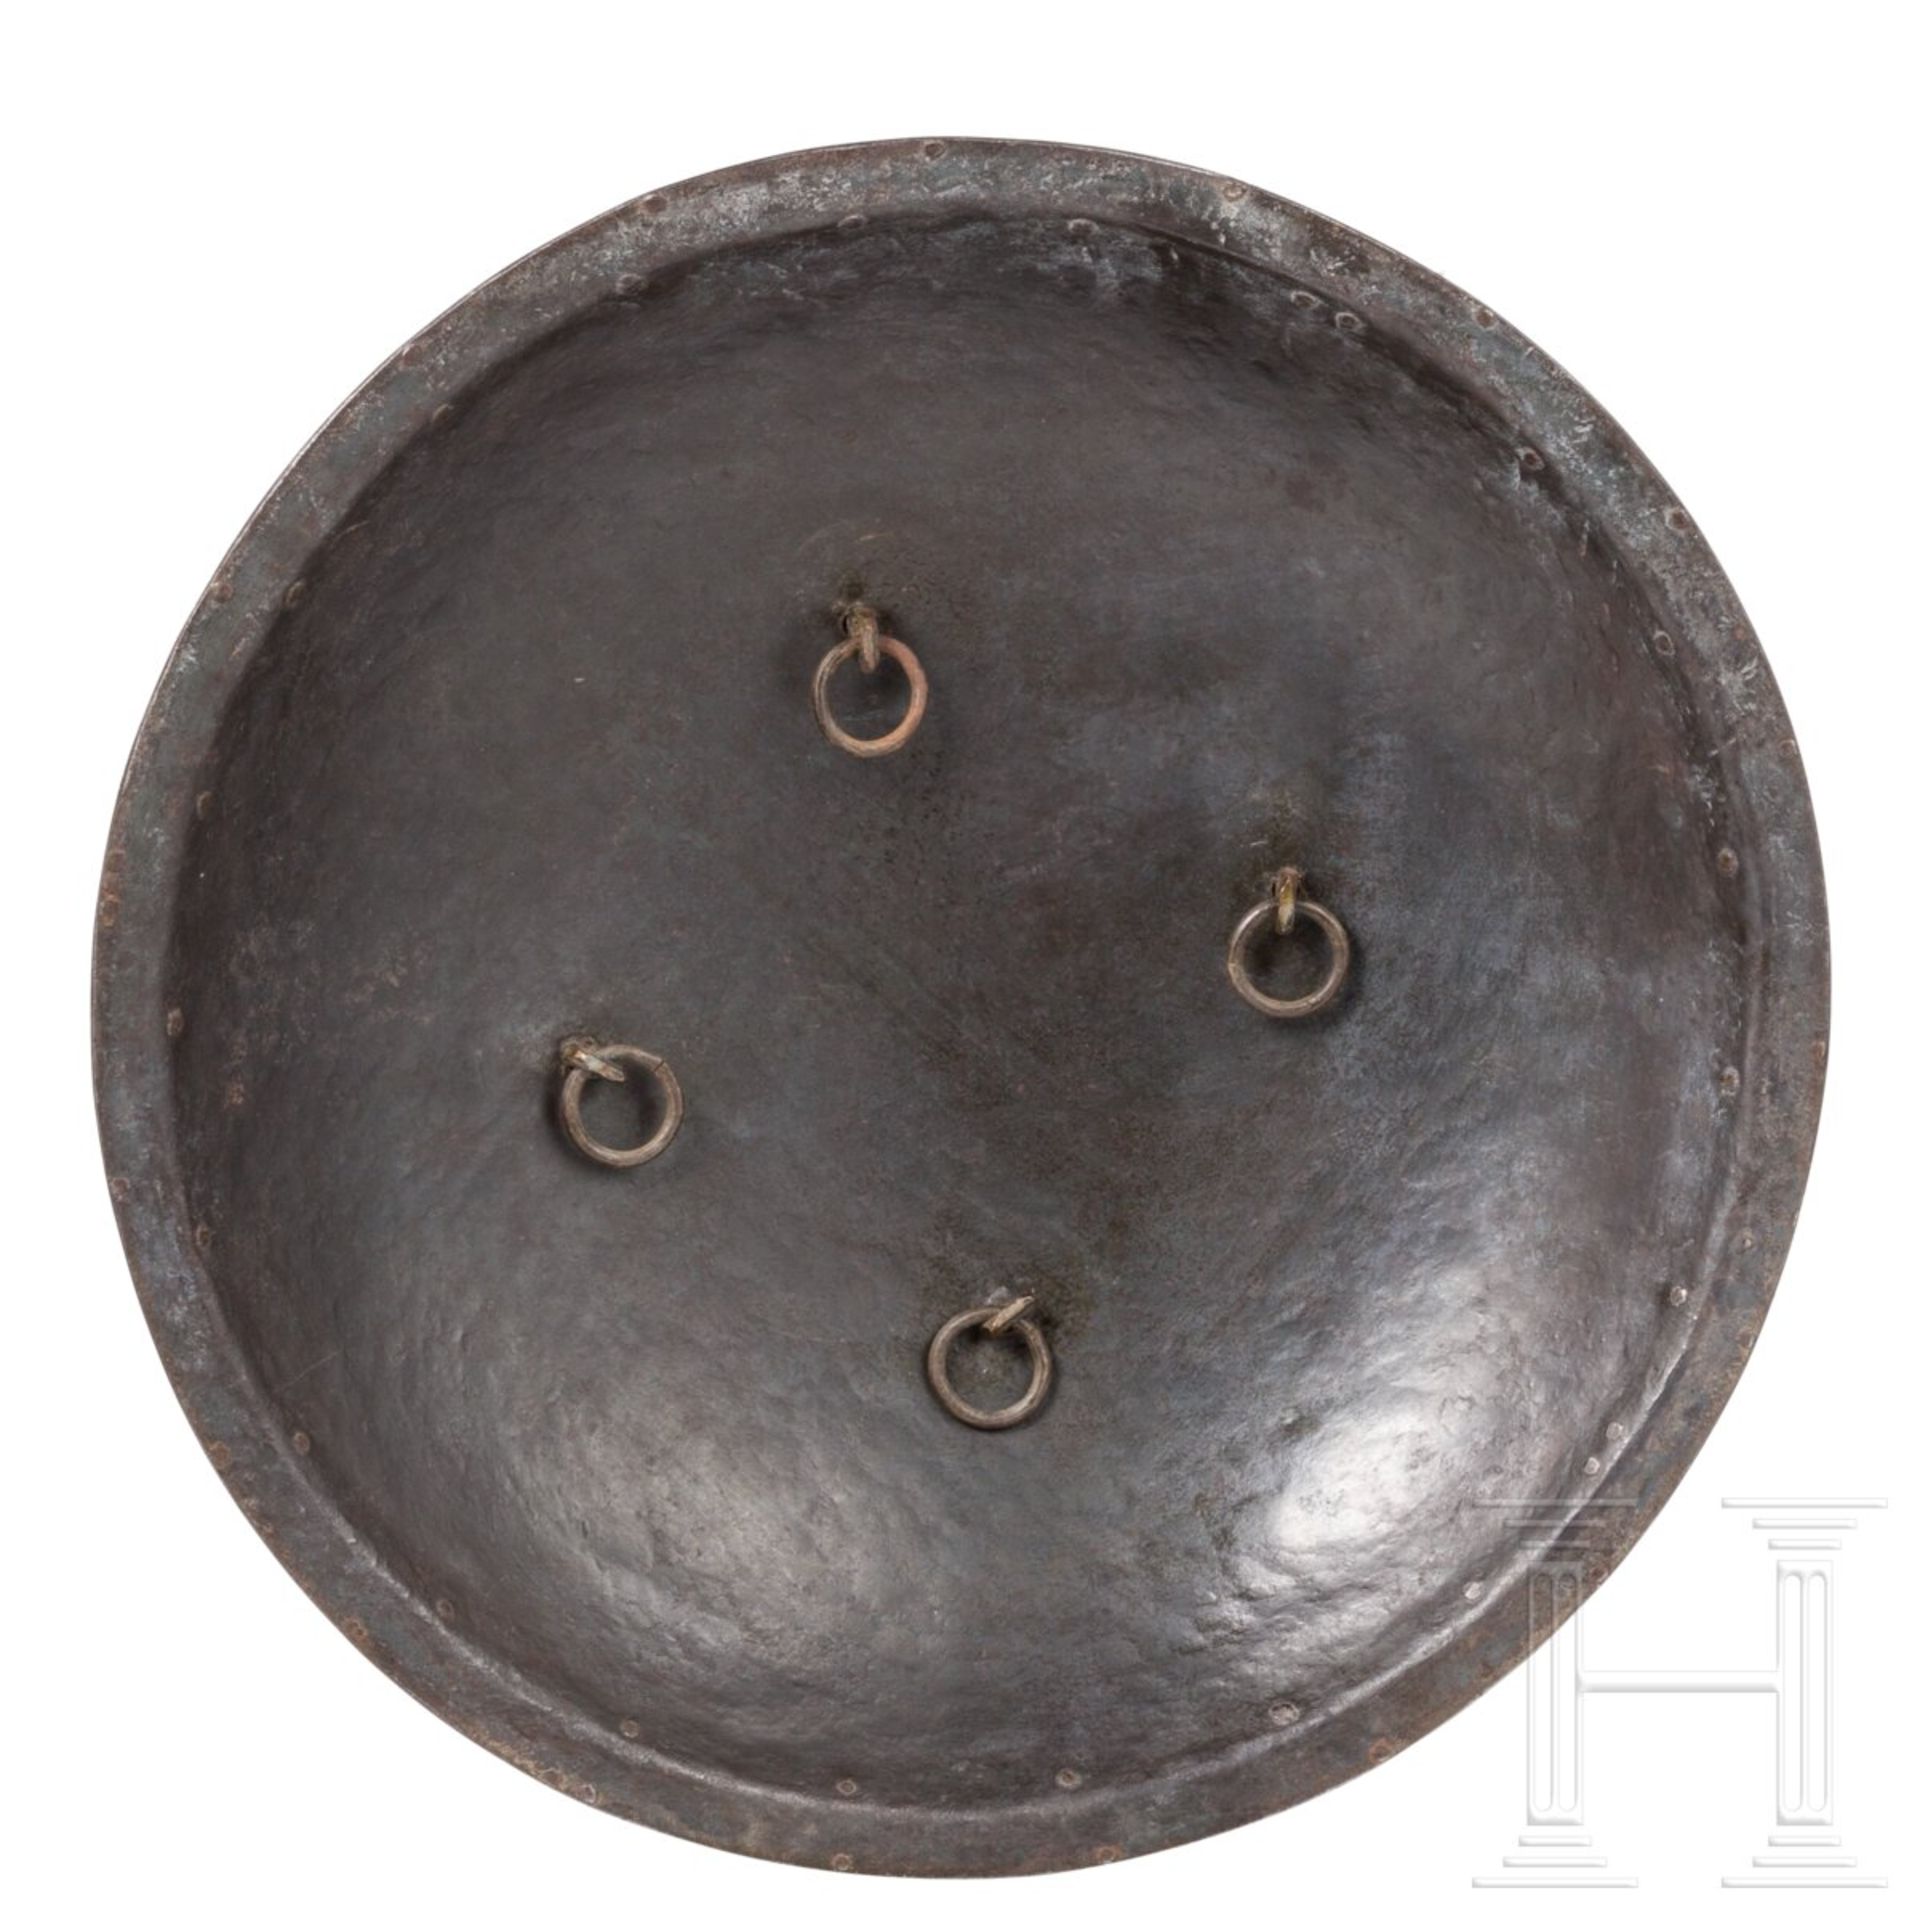 Silber- und goldtauschierter Helm und Schild, Nordindien (Lahore), 1. Hälfte 19. Jhdt. - Image 7 of 7